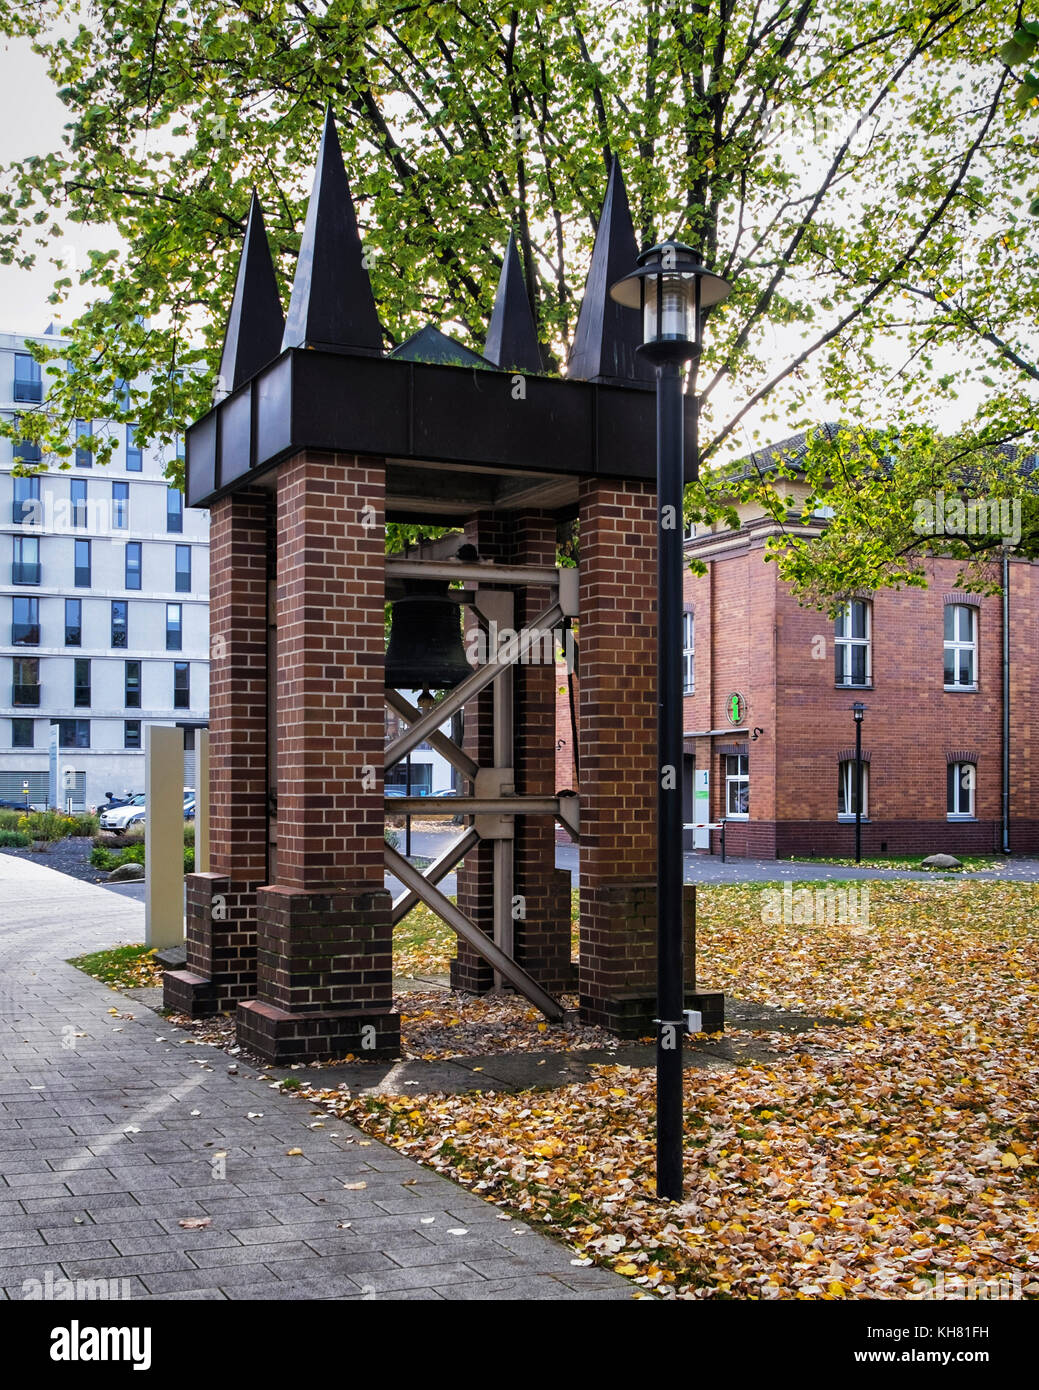 Berlin, Mitte,Tiergarten. Brass bell in grounds of Evangelical Elizabeth clinic, hospital building Stock Photo